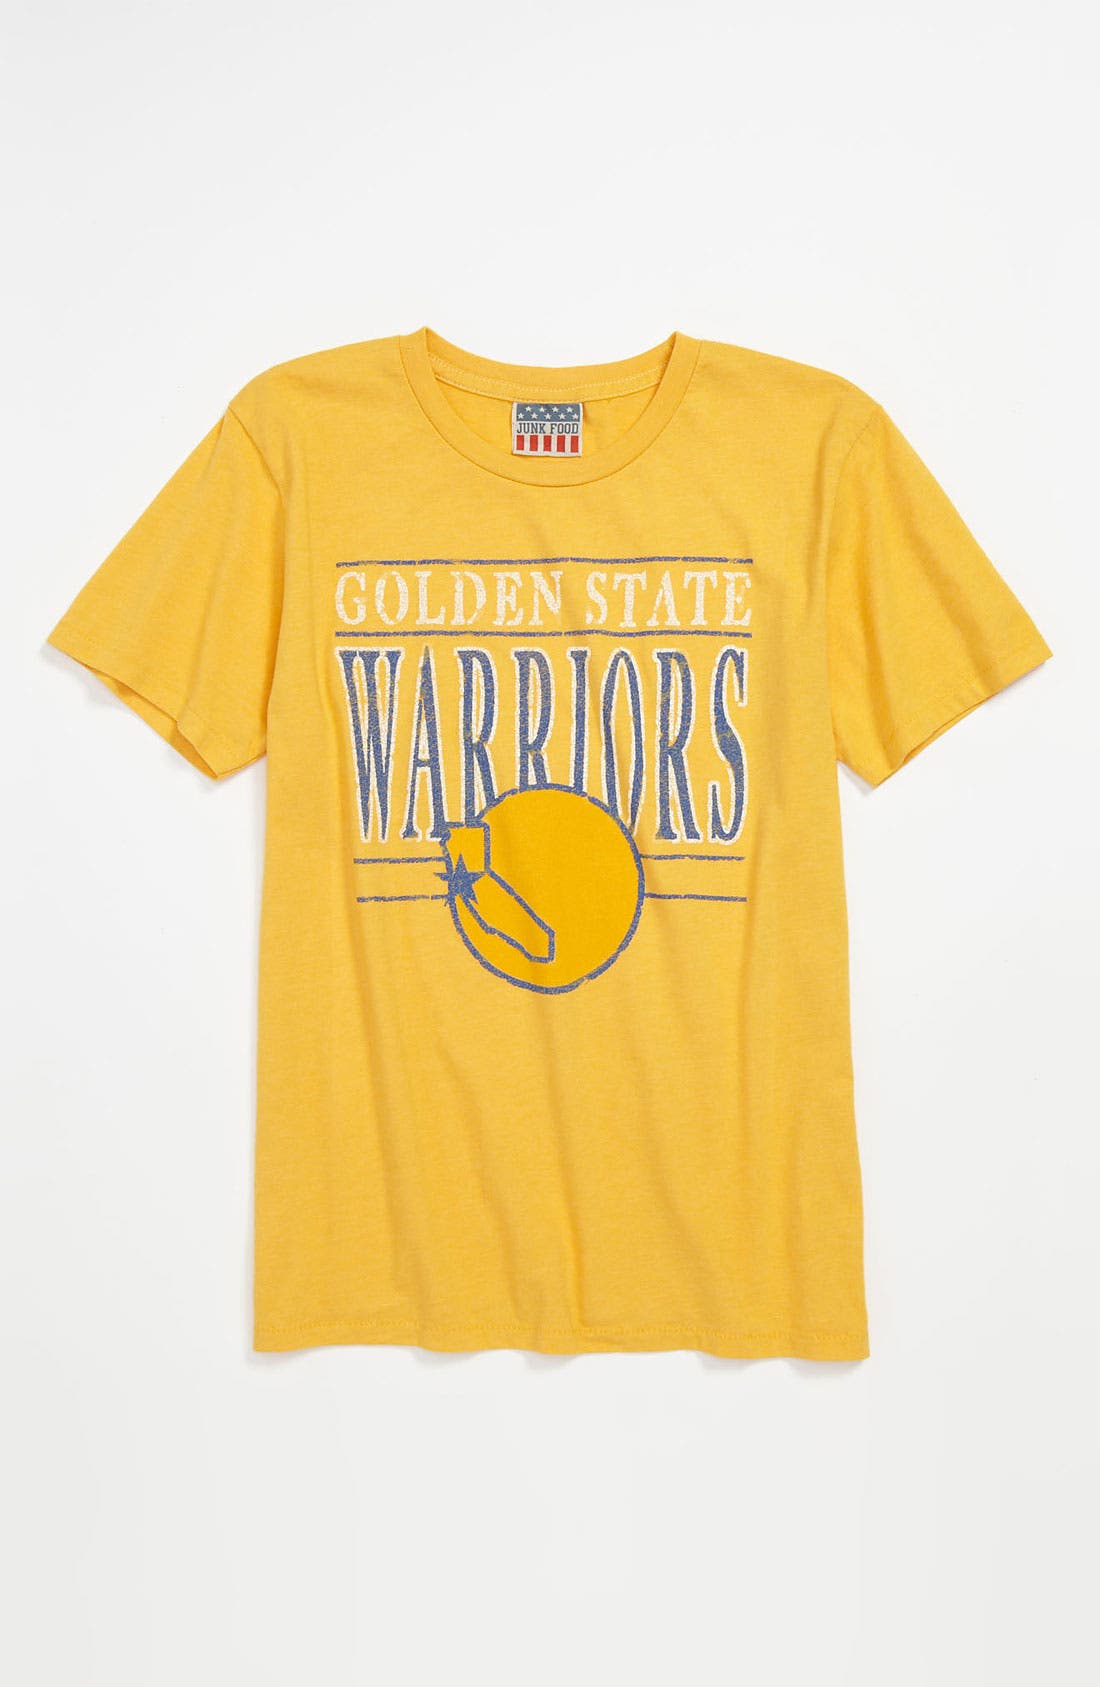 golden state warriors boys shirt